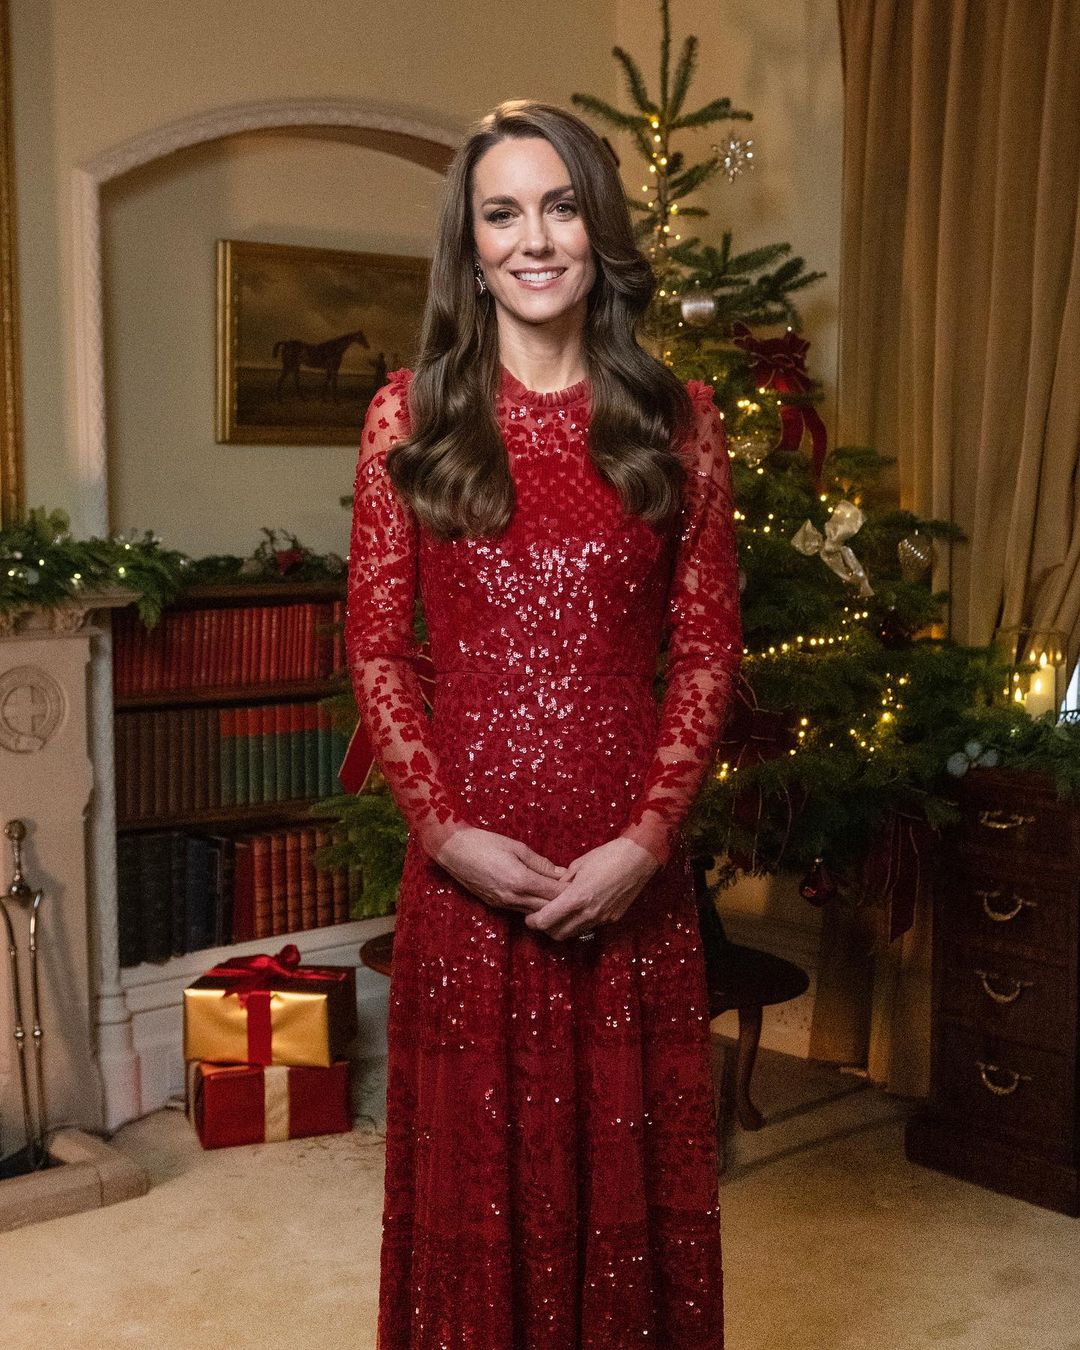 Vilmos herceg és Katalin hercegné publikálták a család idei karácsonyi fotóját: nagy a megdöbbenés